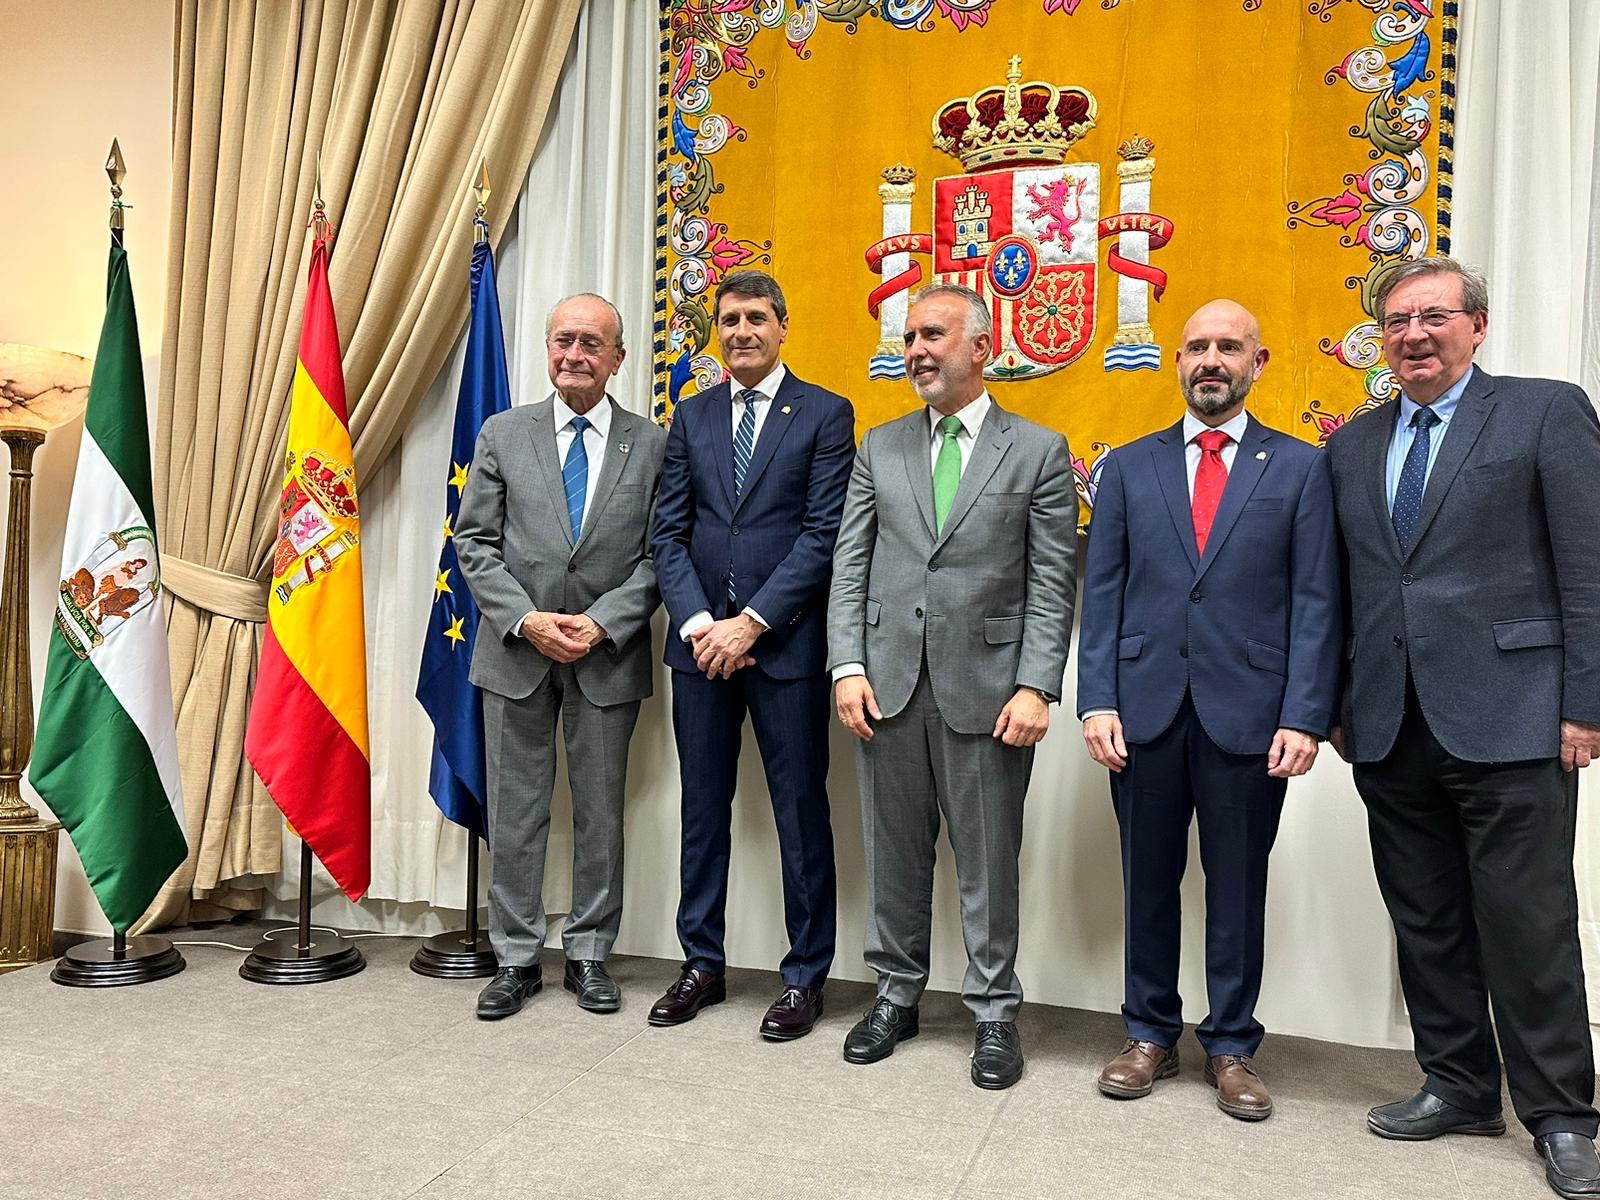 Ángel Víctor Torres preside la presentación oficial del subdelegado del Gobierno en Málaga y se reúne con asociaciones de Memoria Democrática